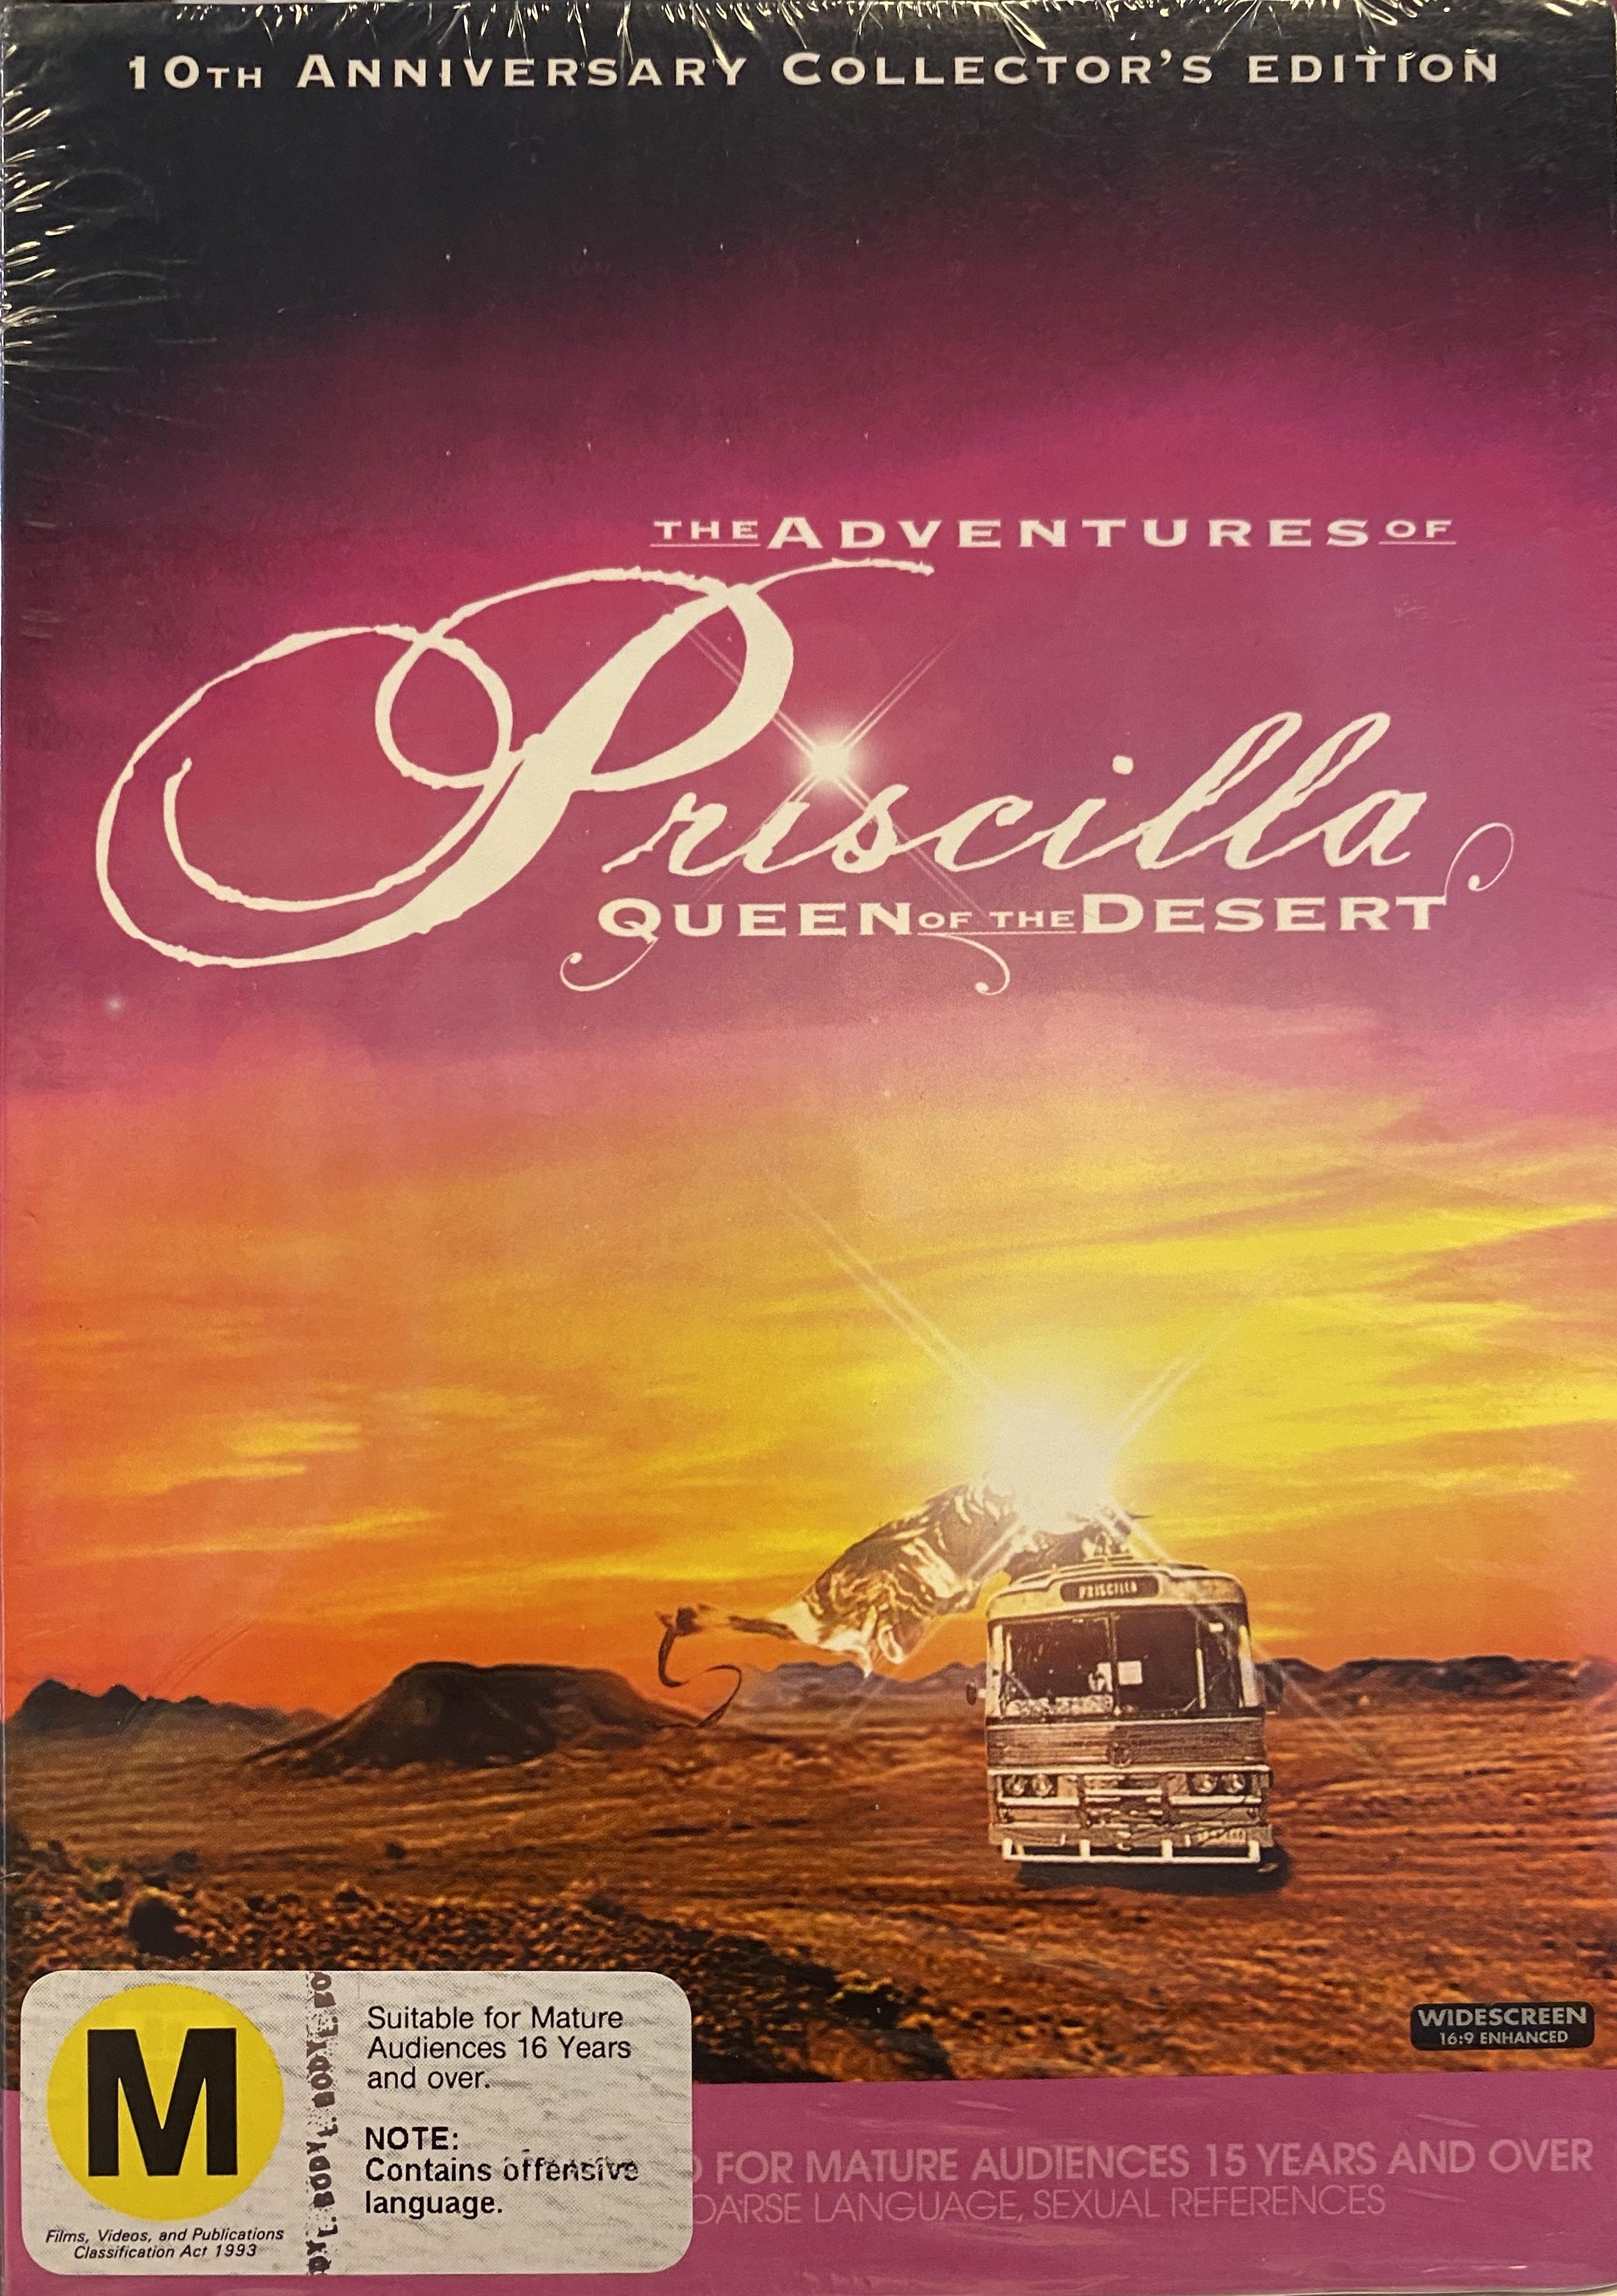  The Adventures of Priscilla, Queen of the Desert [DVD